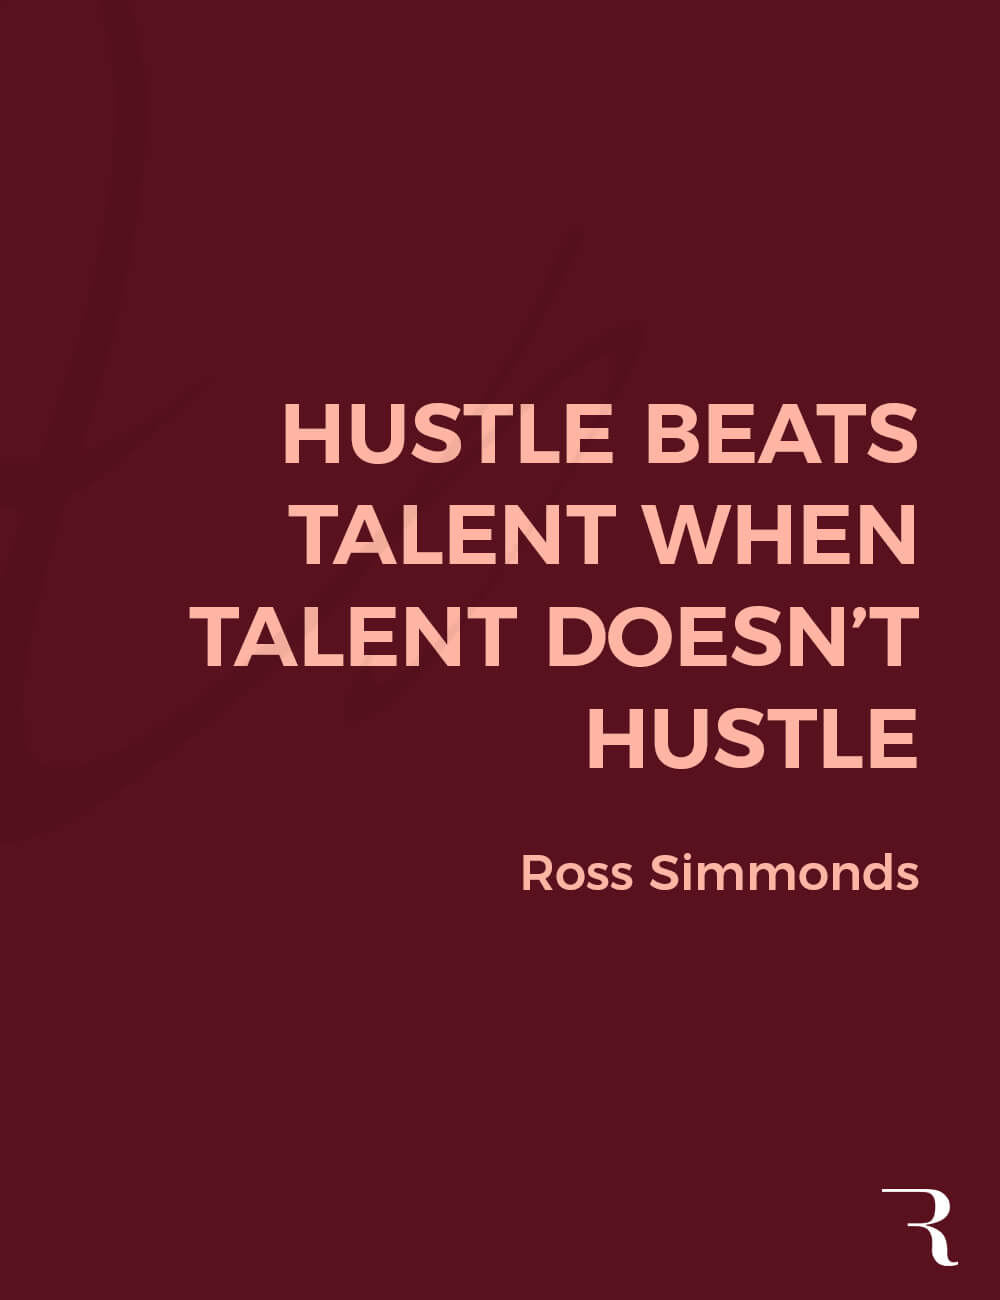 Motivational Quotes: “Hustle beats talent, when talent doesn’t hustle.” 112 Motivational Quotes to Be a Better Entrepreneur